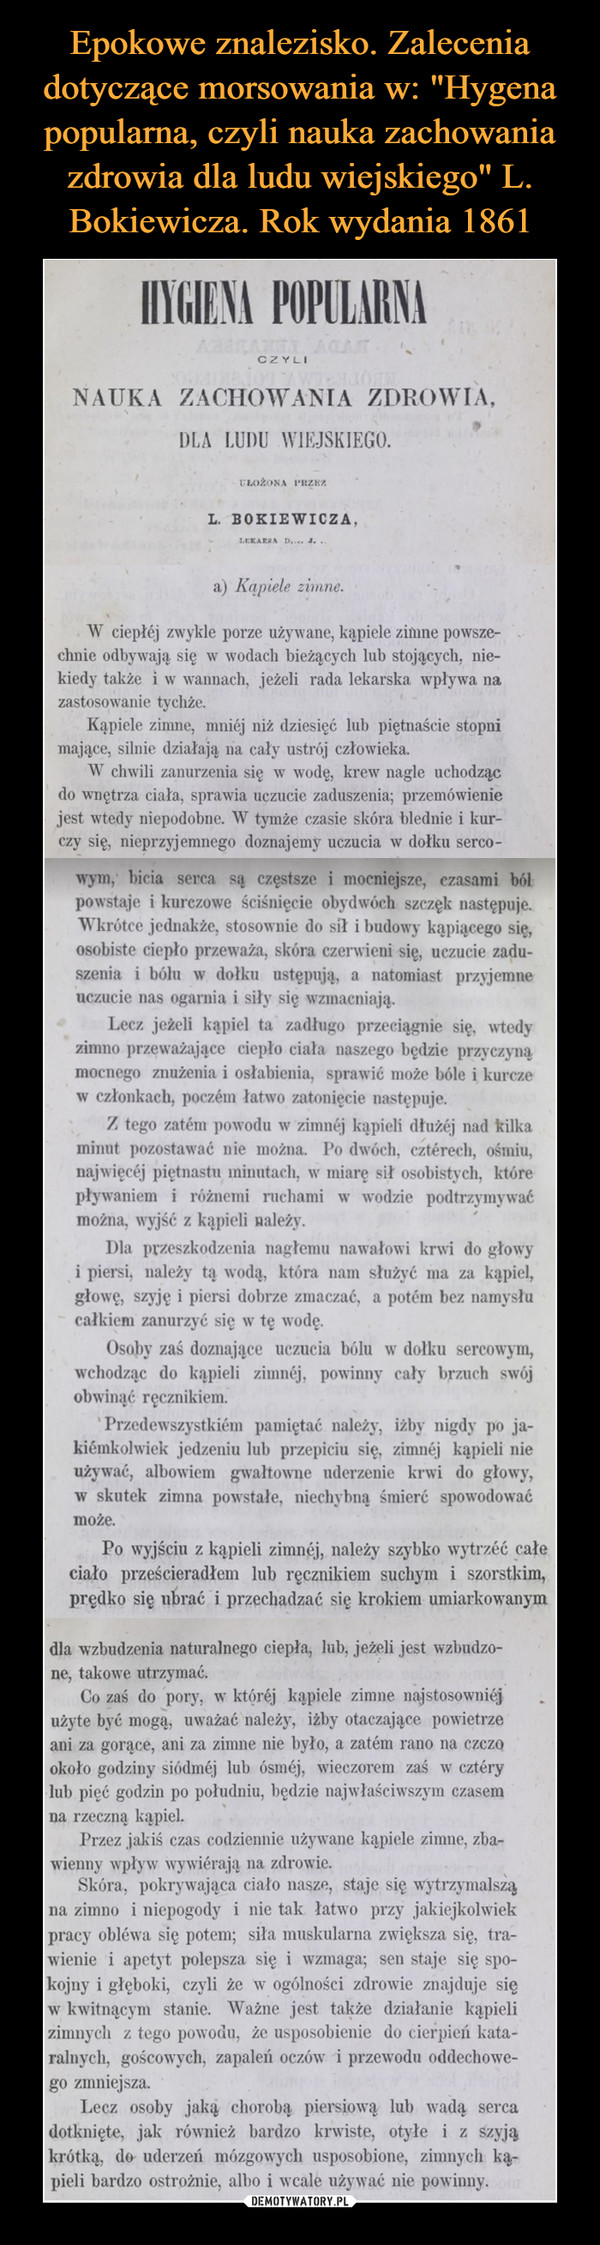 Epokowe znalezisko. Zalecenia dotyczące morsowania w: "Hygena popularna, czyli nauka zachowania zdrowia dla ludu wiejskiego" L. Bokiewicza. Rok wydania 1861